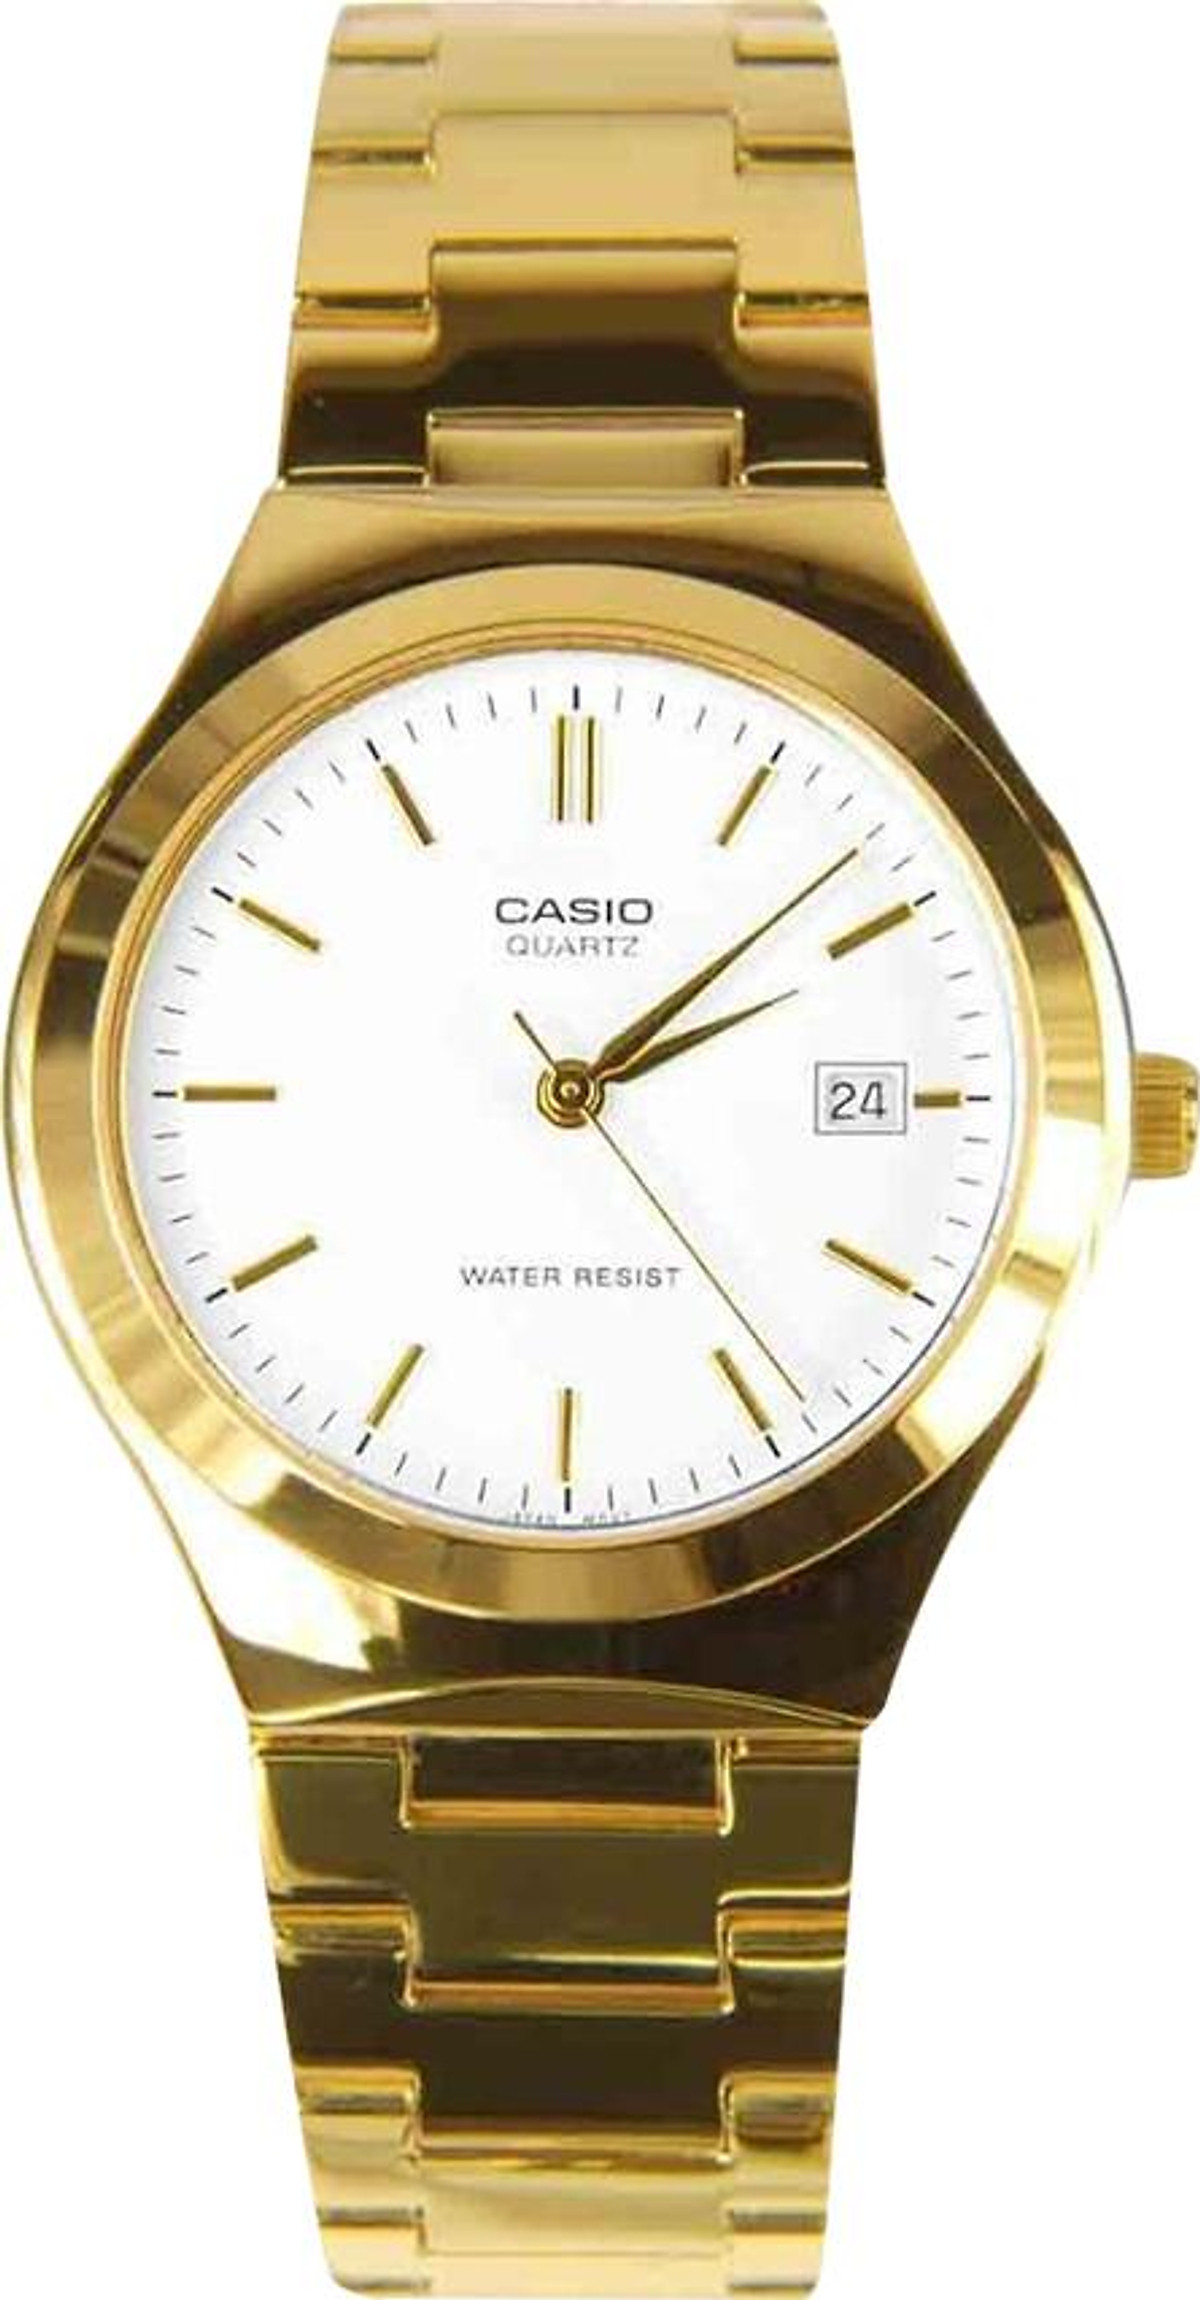 Khám phá đồng hồ Casio MTP-1170N-7ARDF